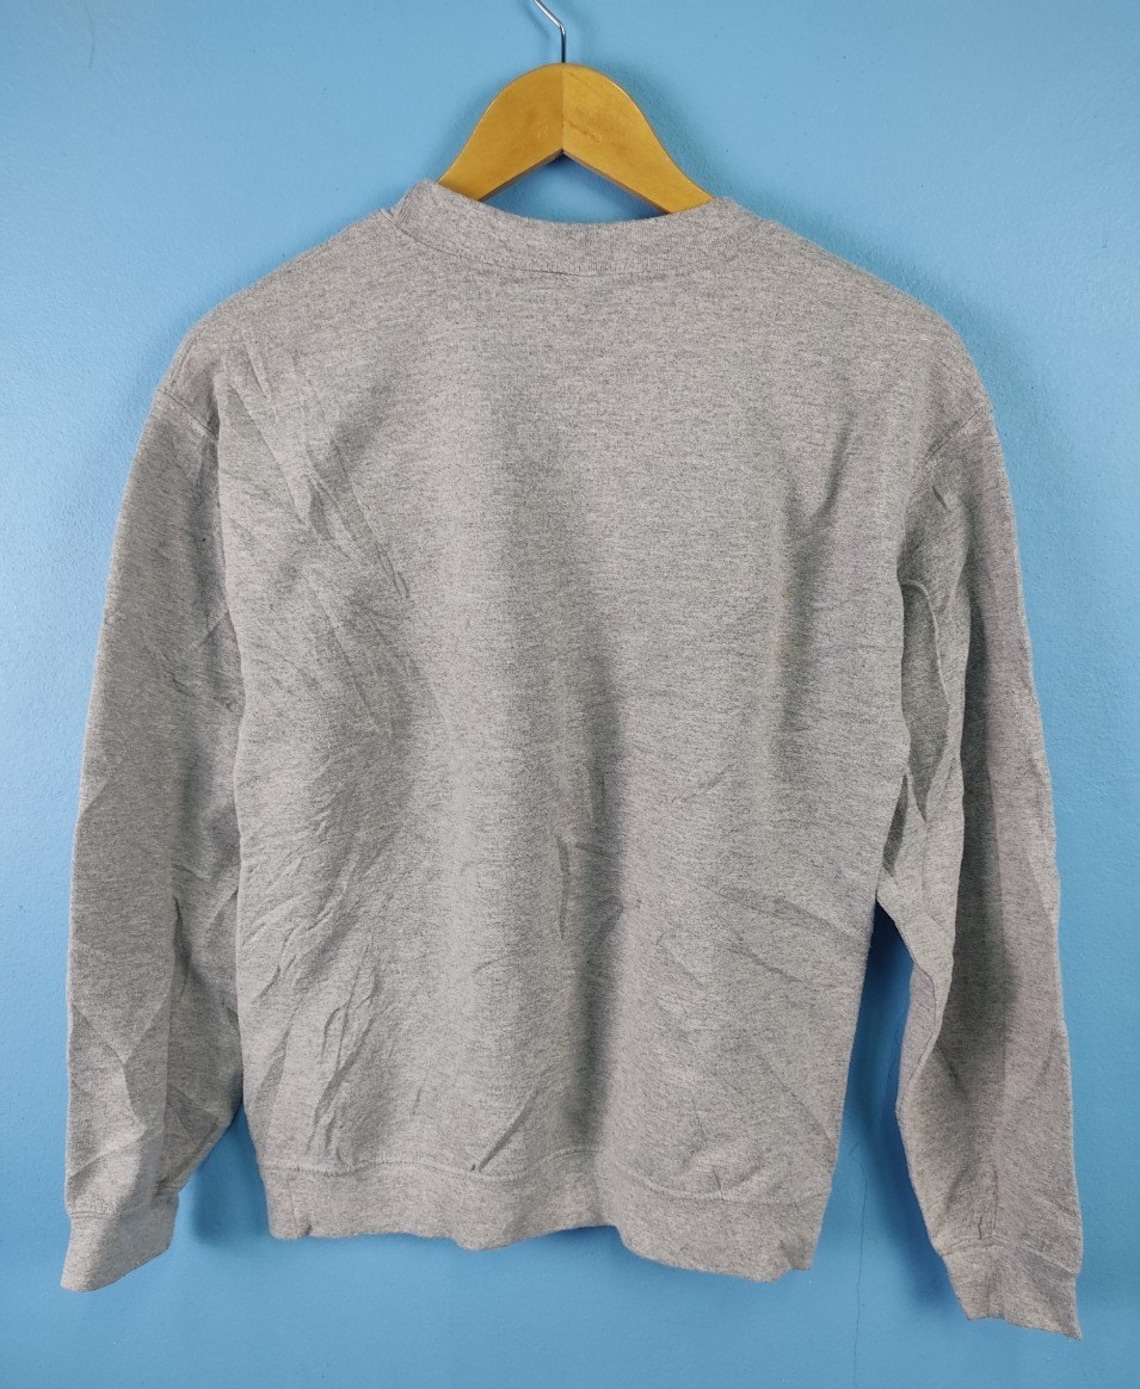 Vintage NC State Wolfpack Sweatshirt | Etsy